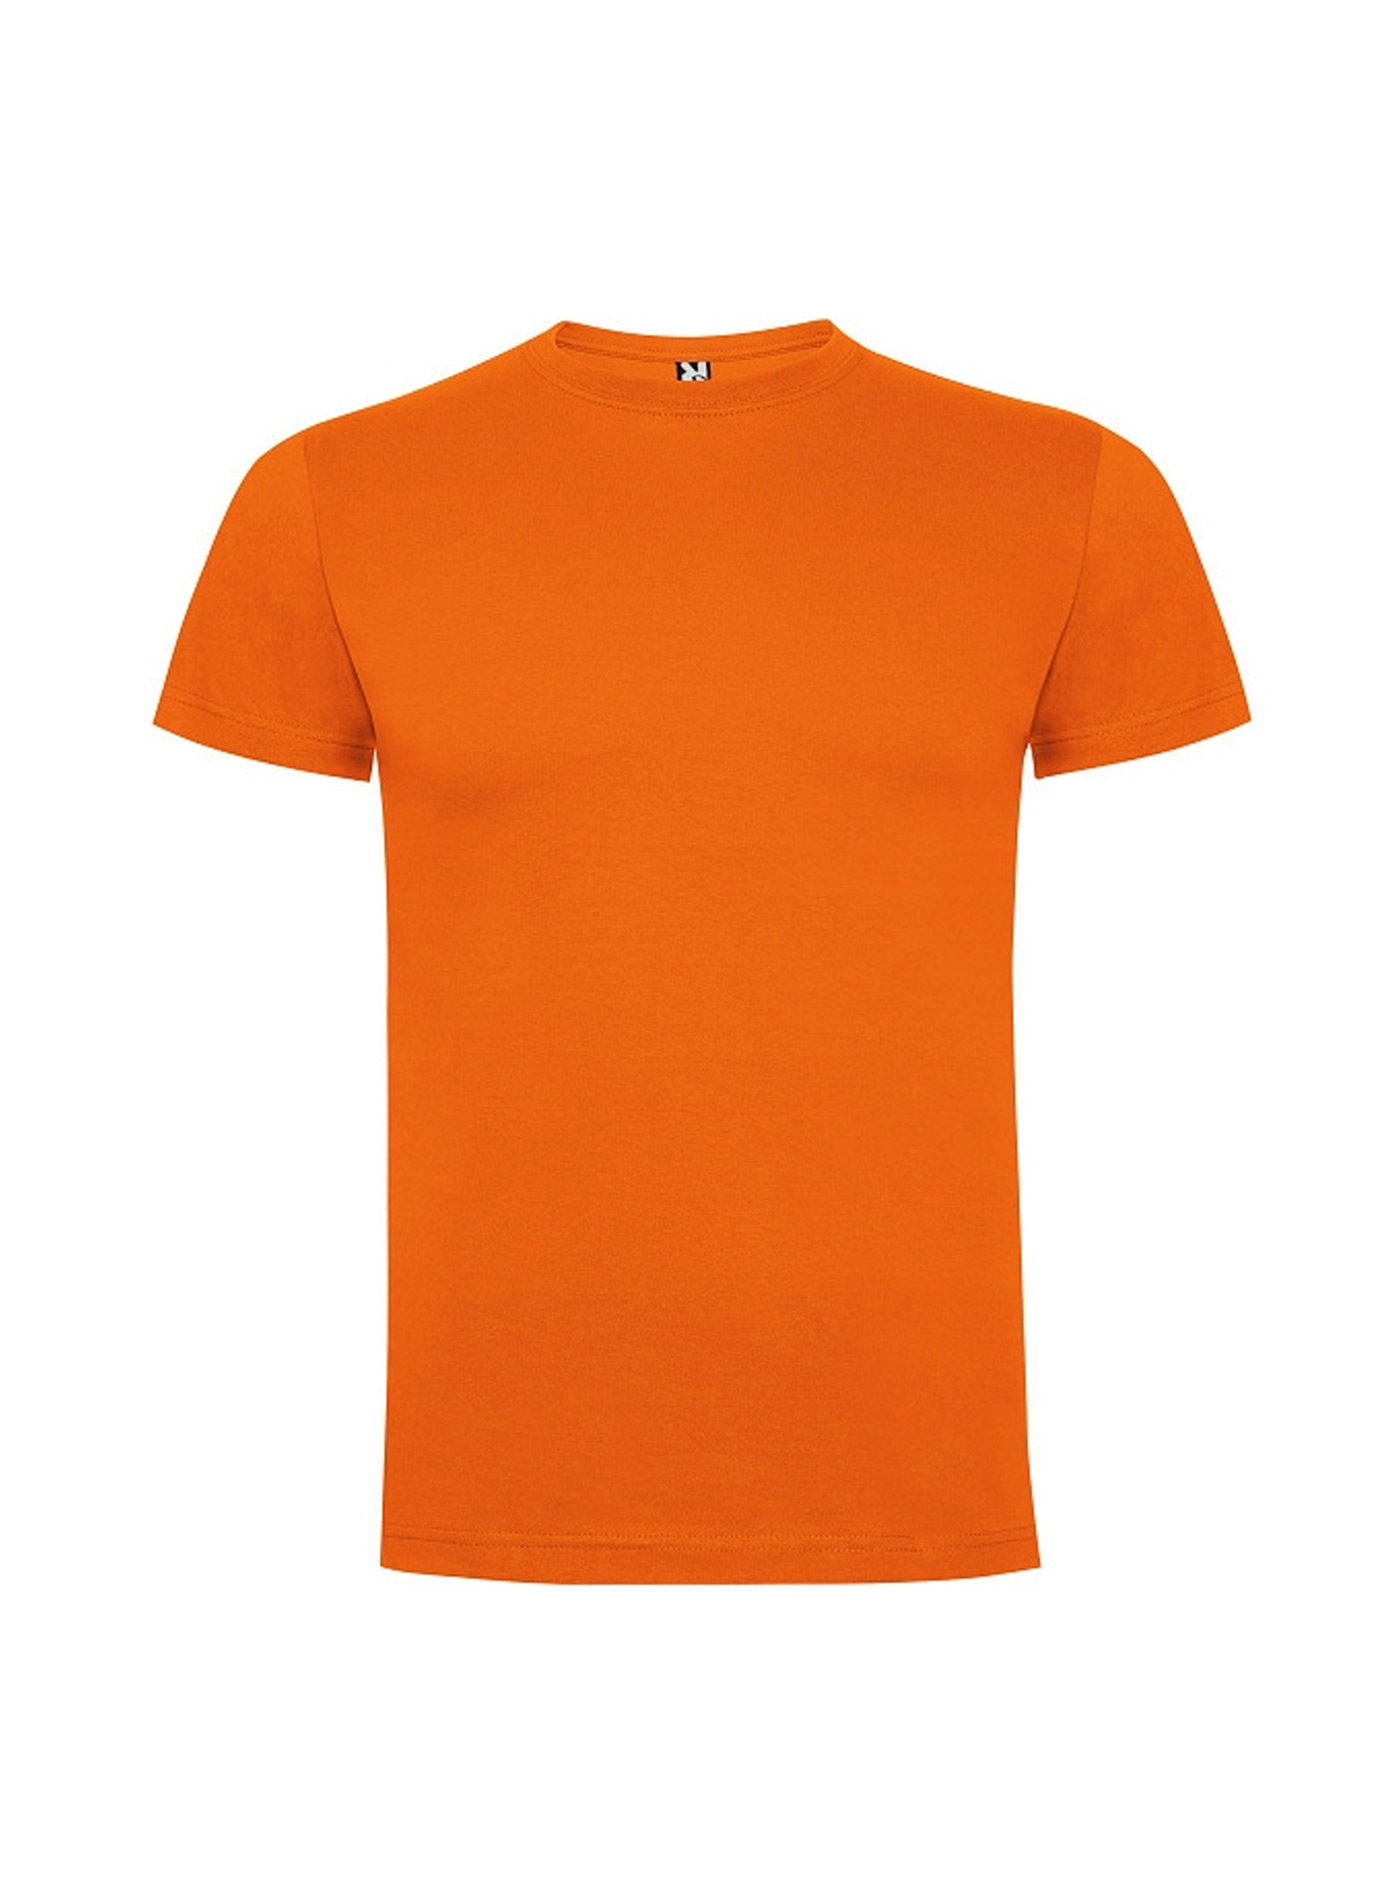 Dětské tričko Roly Dogo premium - Oranžová 5-6